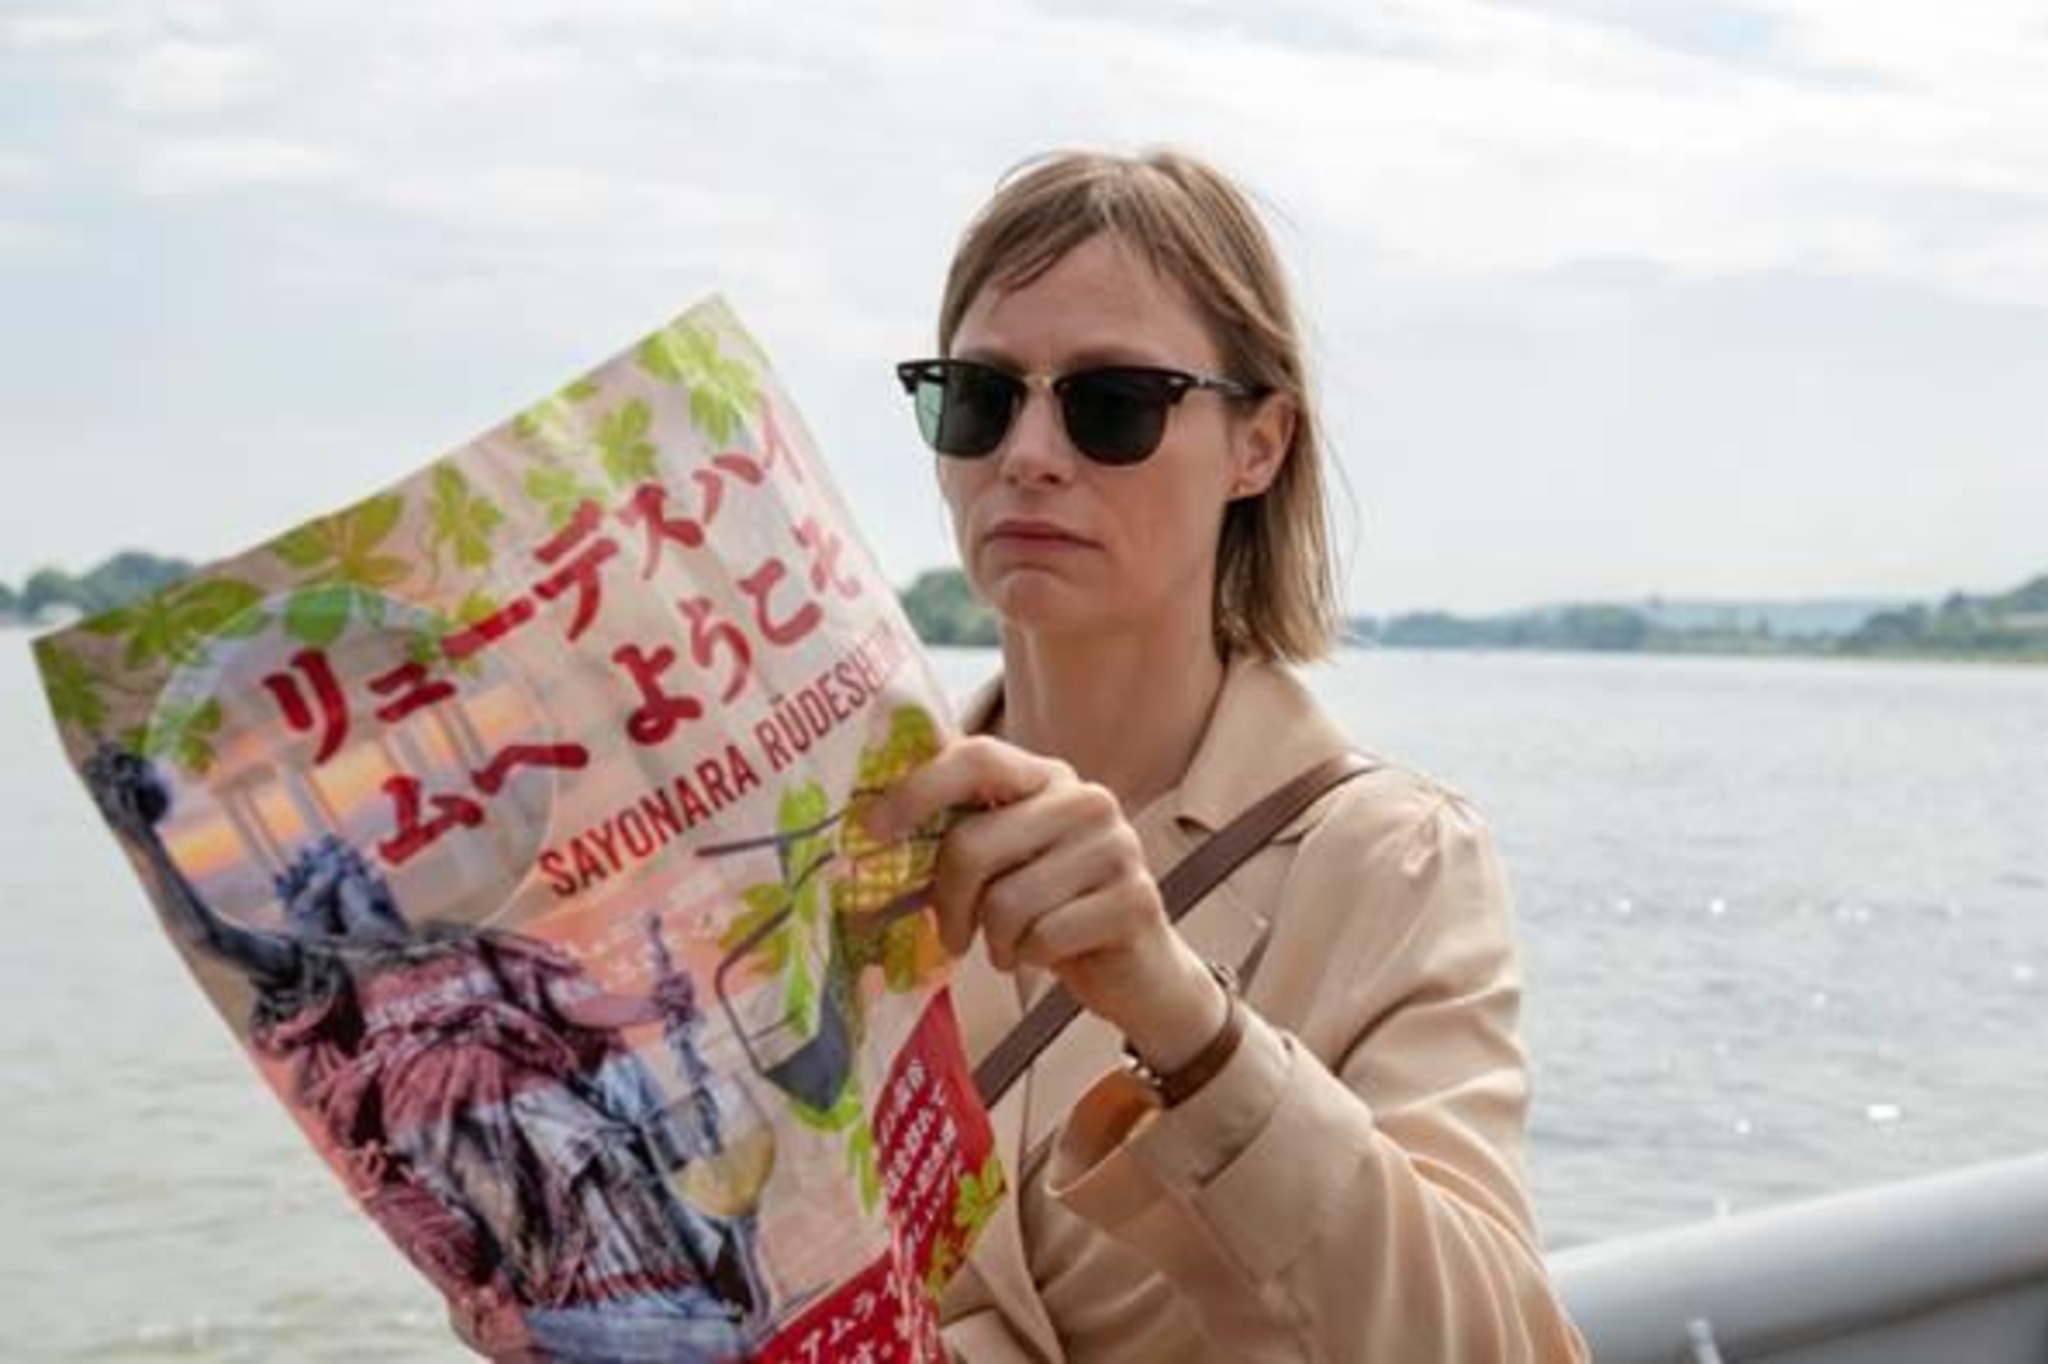 Eine Frau steht an einem großen Fluss, sie trägt eine große Sonnenbrille und halt ein bunt mit deutschen und japanischen Schriftzeichen bedrucktes Plakat in den Händen.